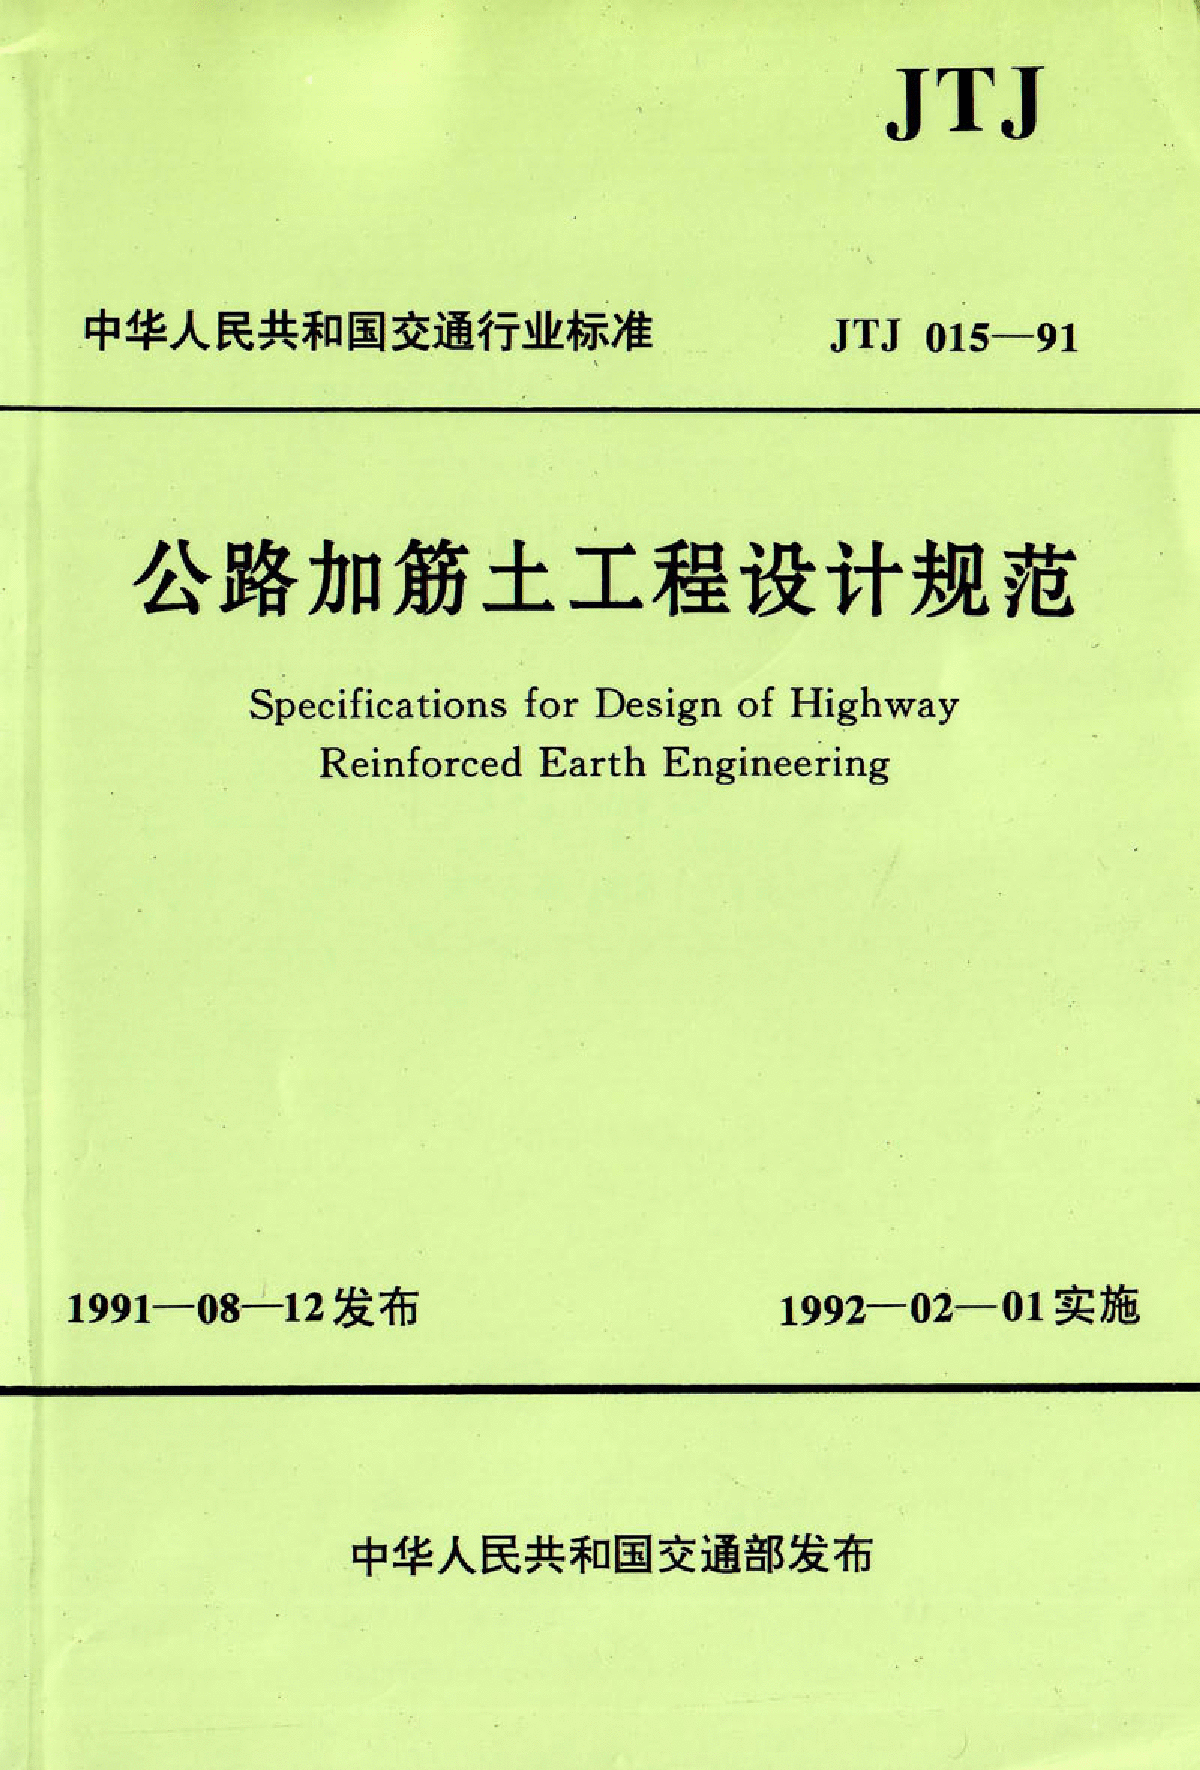 《公路加筋土工程设计规范》(JTJ 015-91)